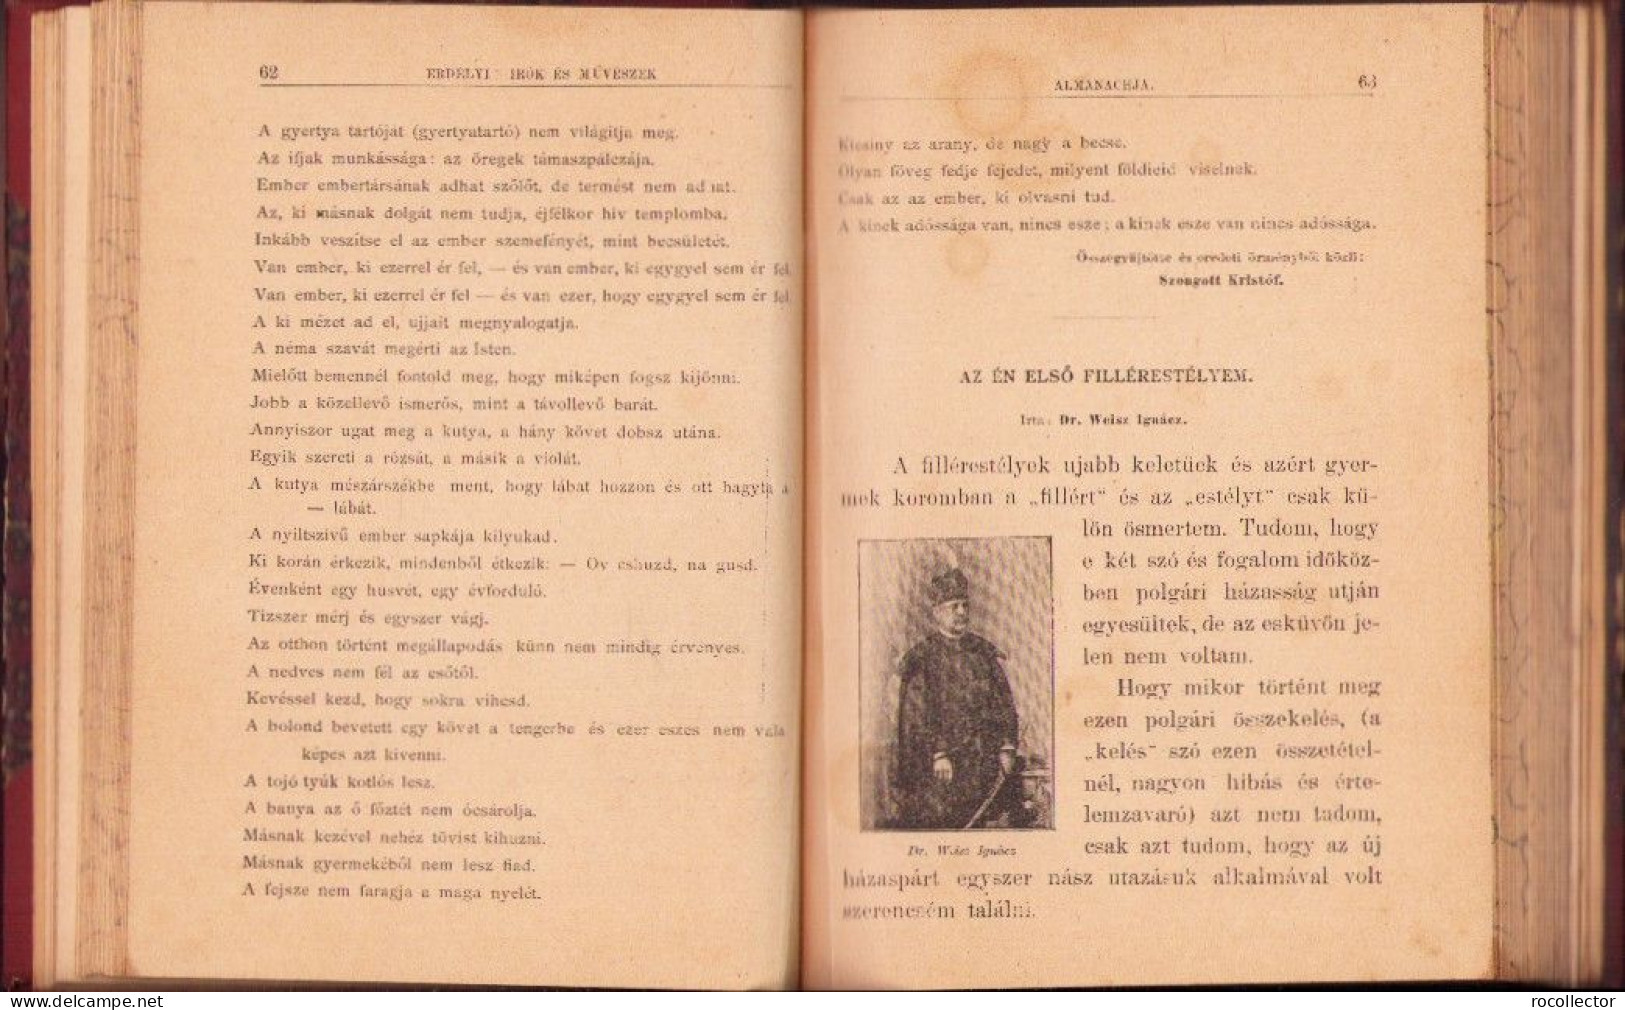 Erdélyi irok és müvészek almanachja szerkesztettek Fekete Béla és Miskolczi Henrik, 1892, Budapest C4328N